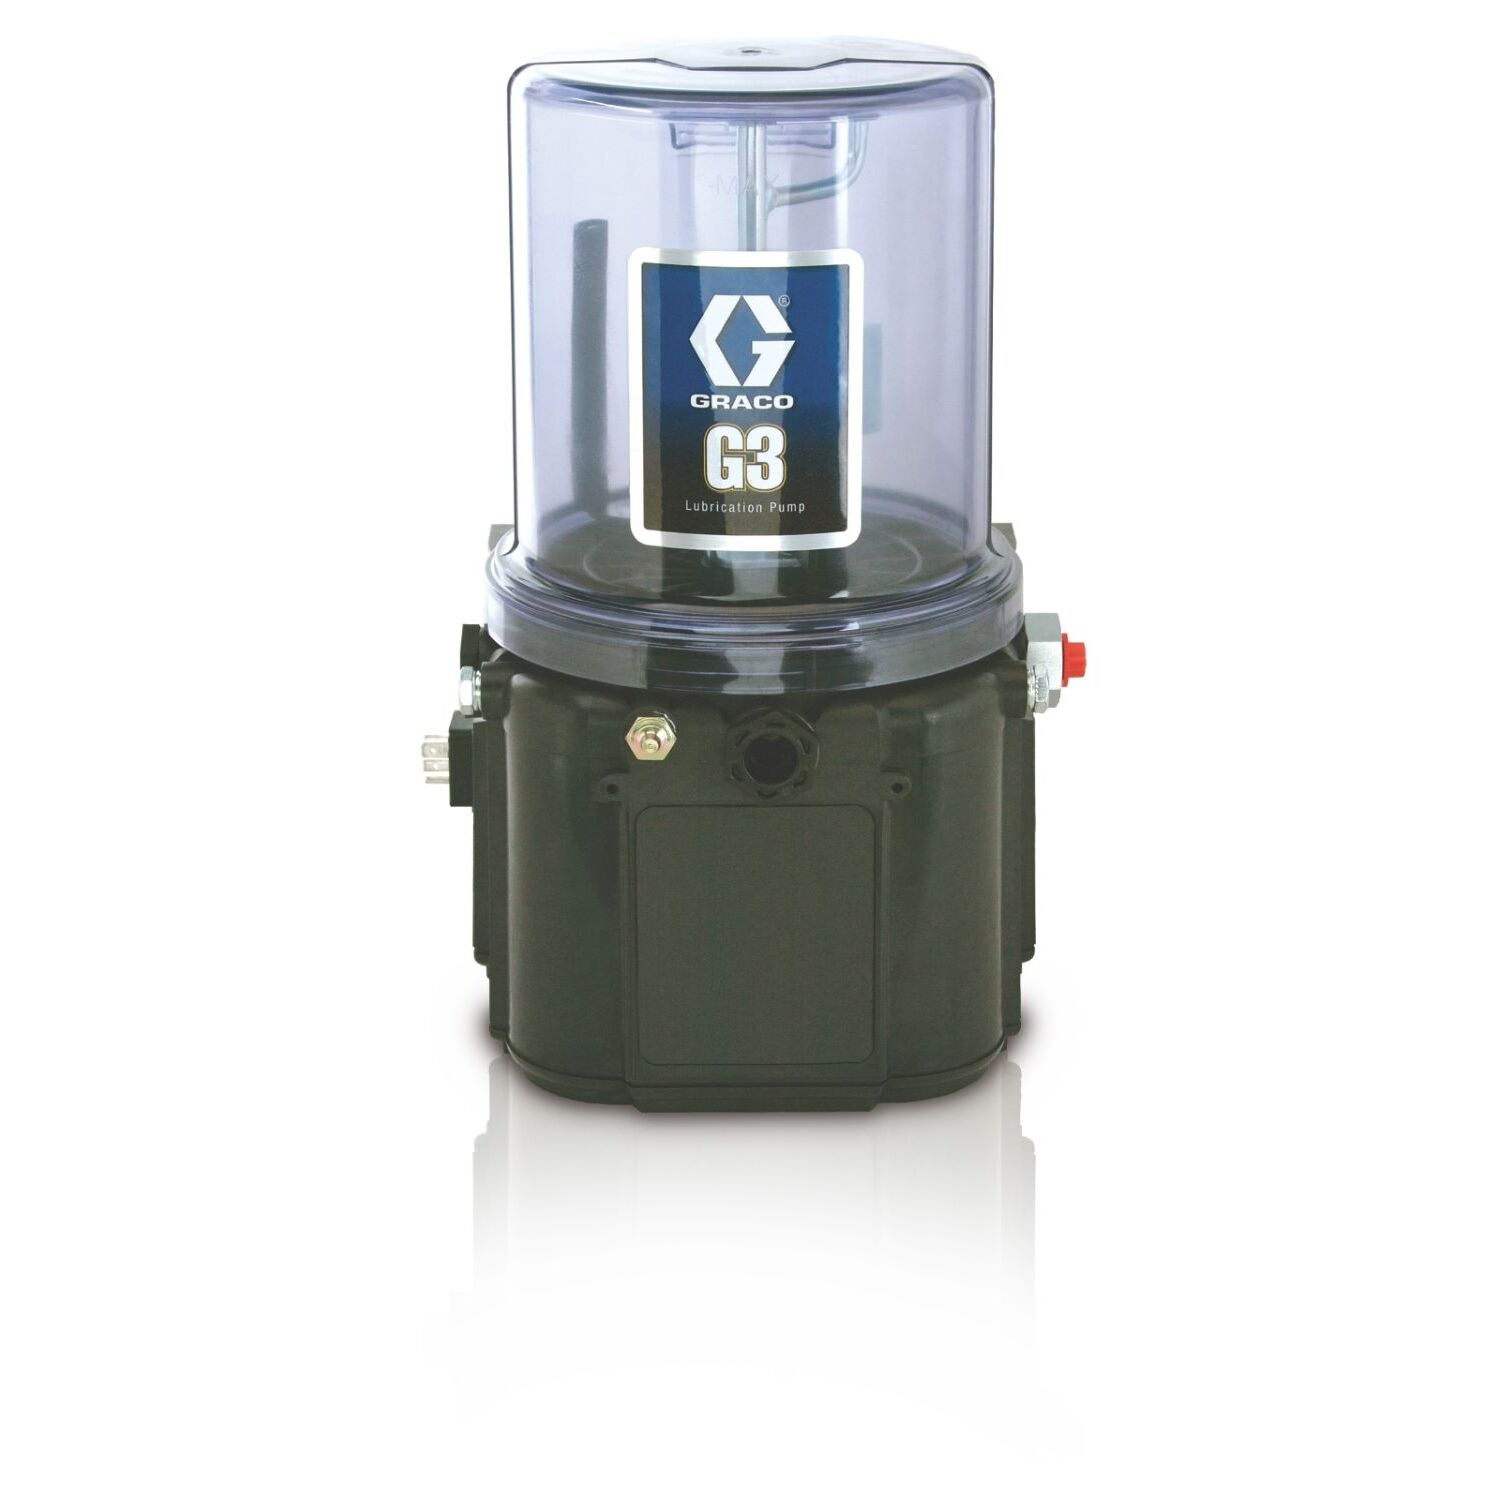 1 Bomba de lubricación con grasa estándar G3™, 12 VCC, 2 litros, nivel bajo externo, CPC